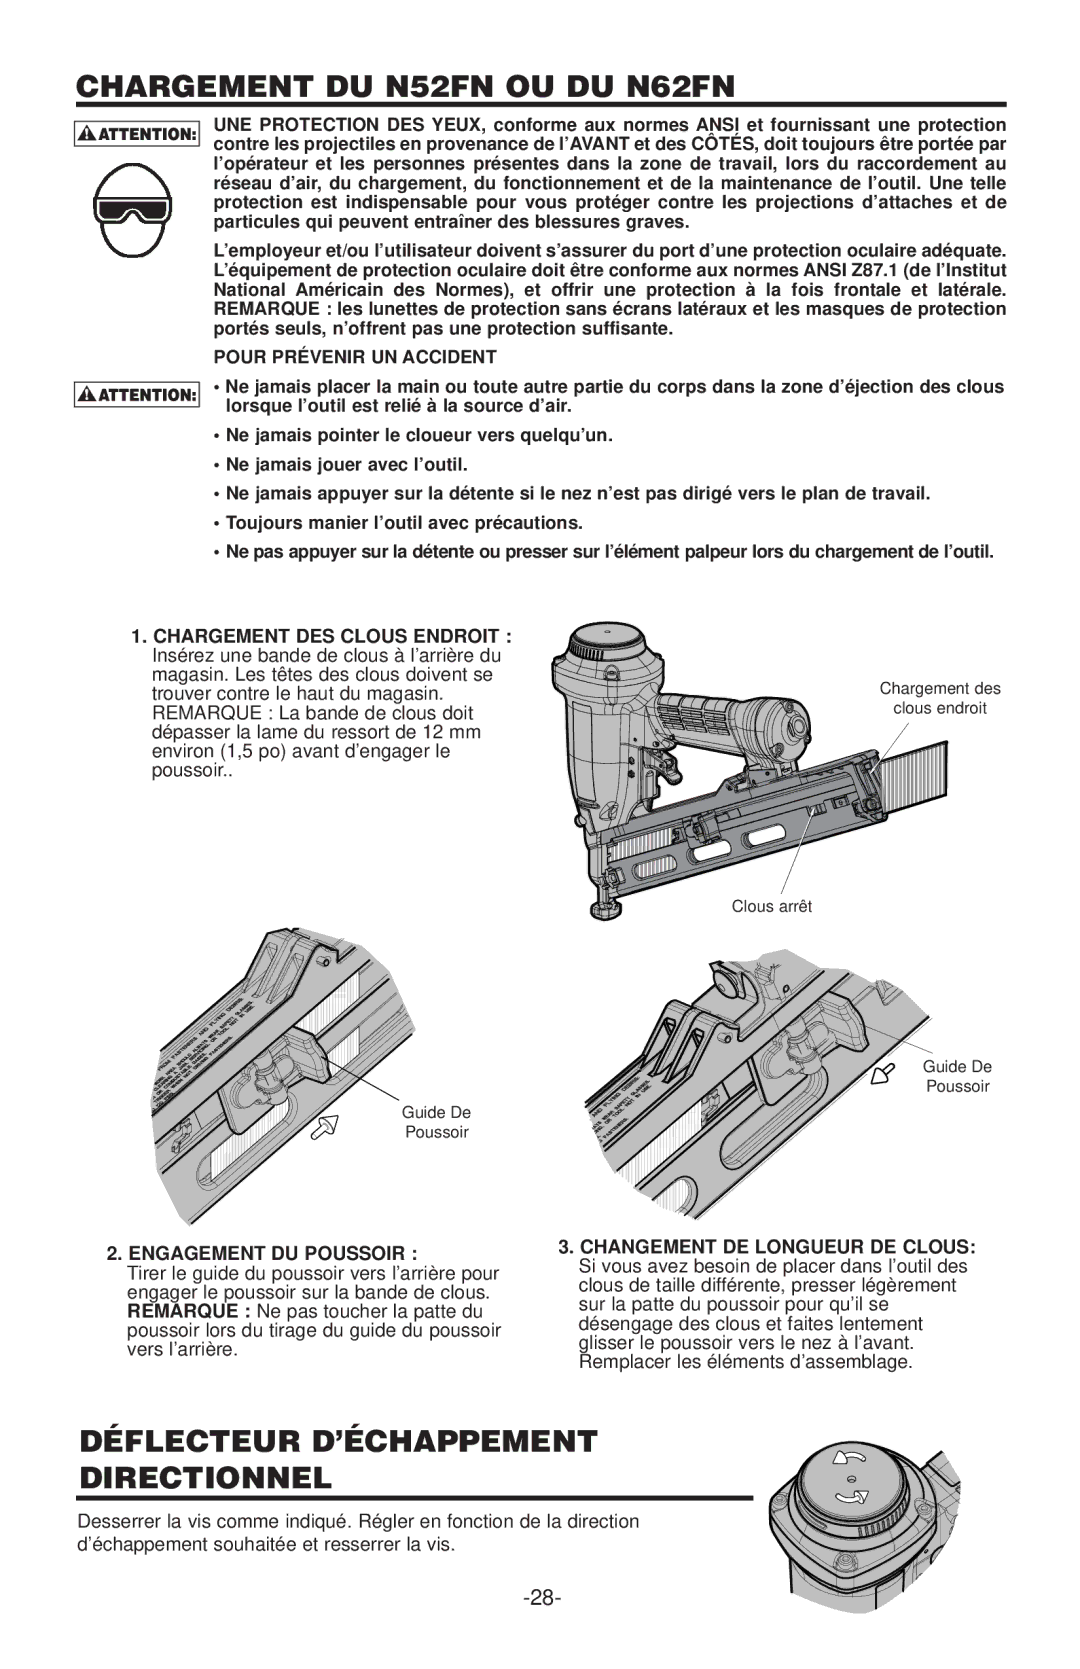 Quantaray manual Chargement DU N52FN OU DU N62FN, Déflecteur D’ÉCHAPPEMENT Directionnel, Pour Prévenir UN Accident 